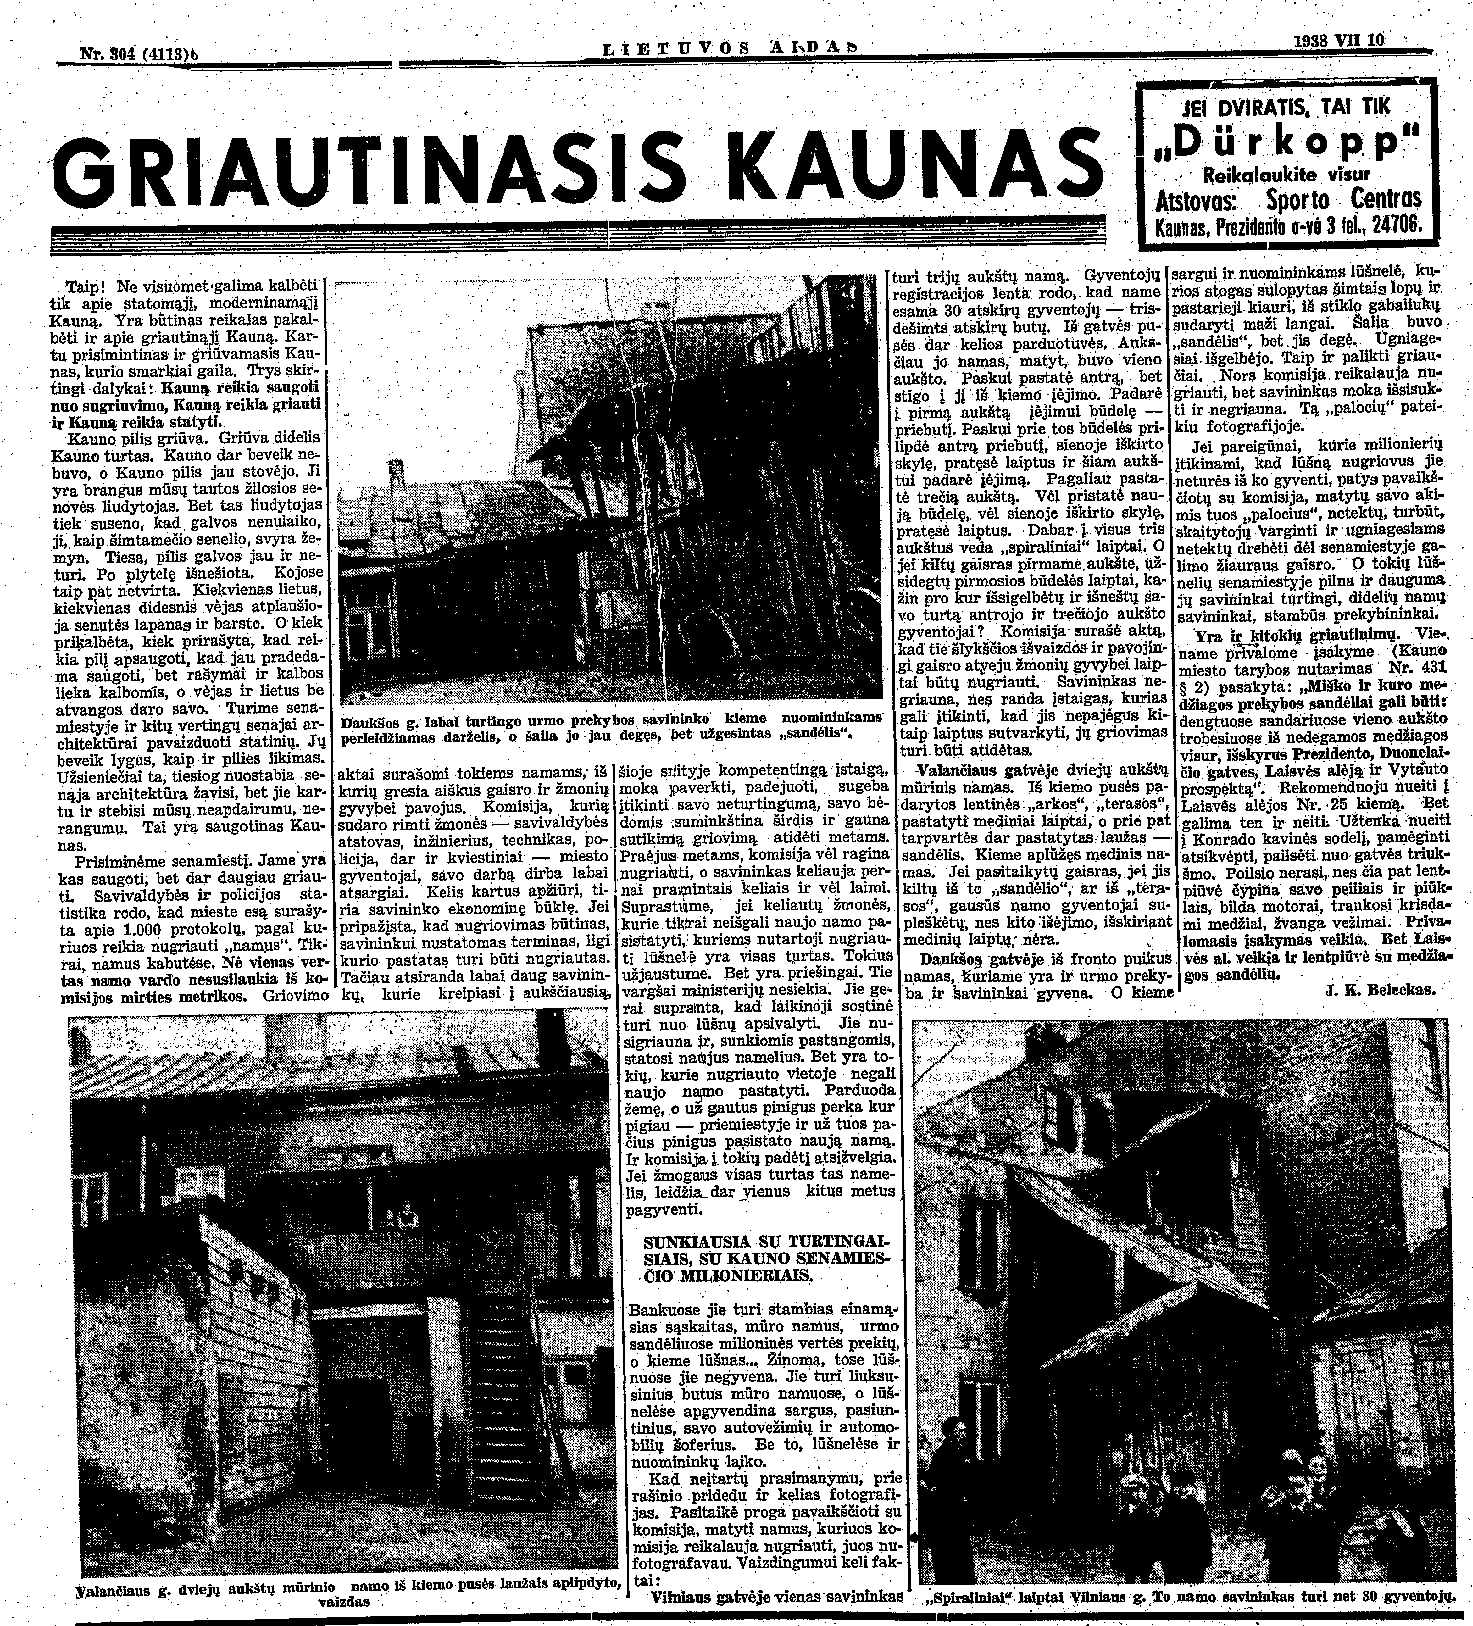 Griautinasis Kaunas